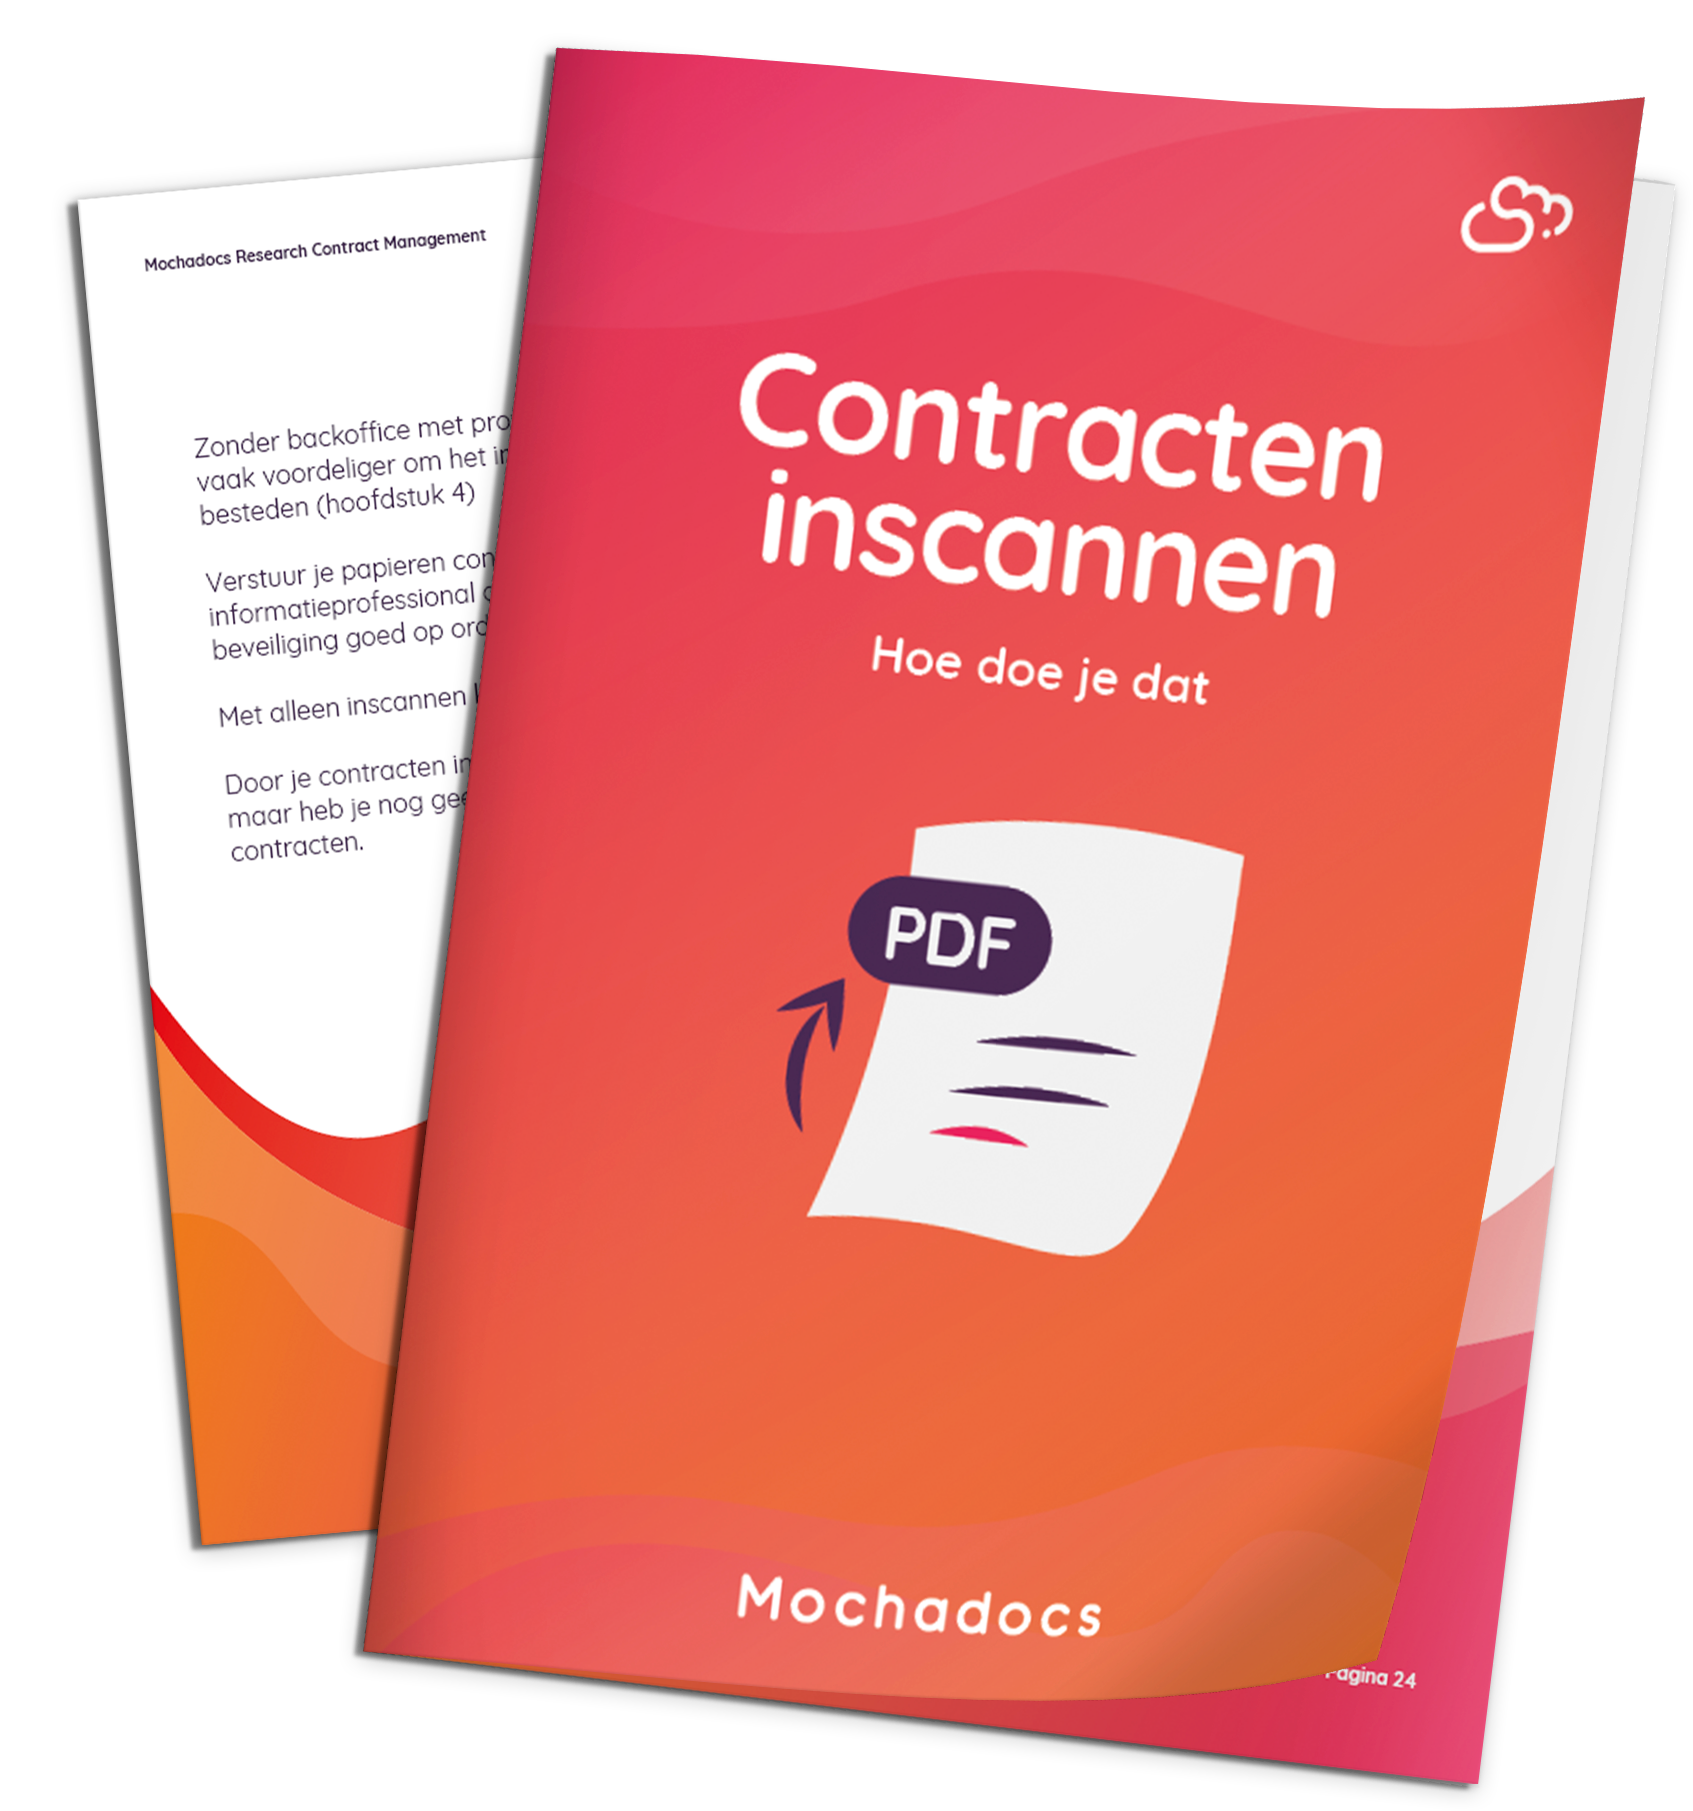 Mochadocs - Contract Lifecycle Management - Contracten inscannen hoe doe je dat?